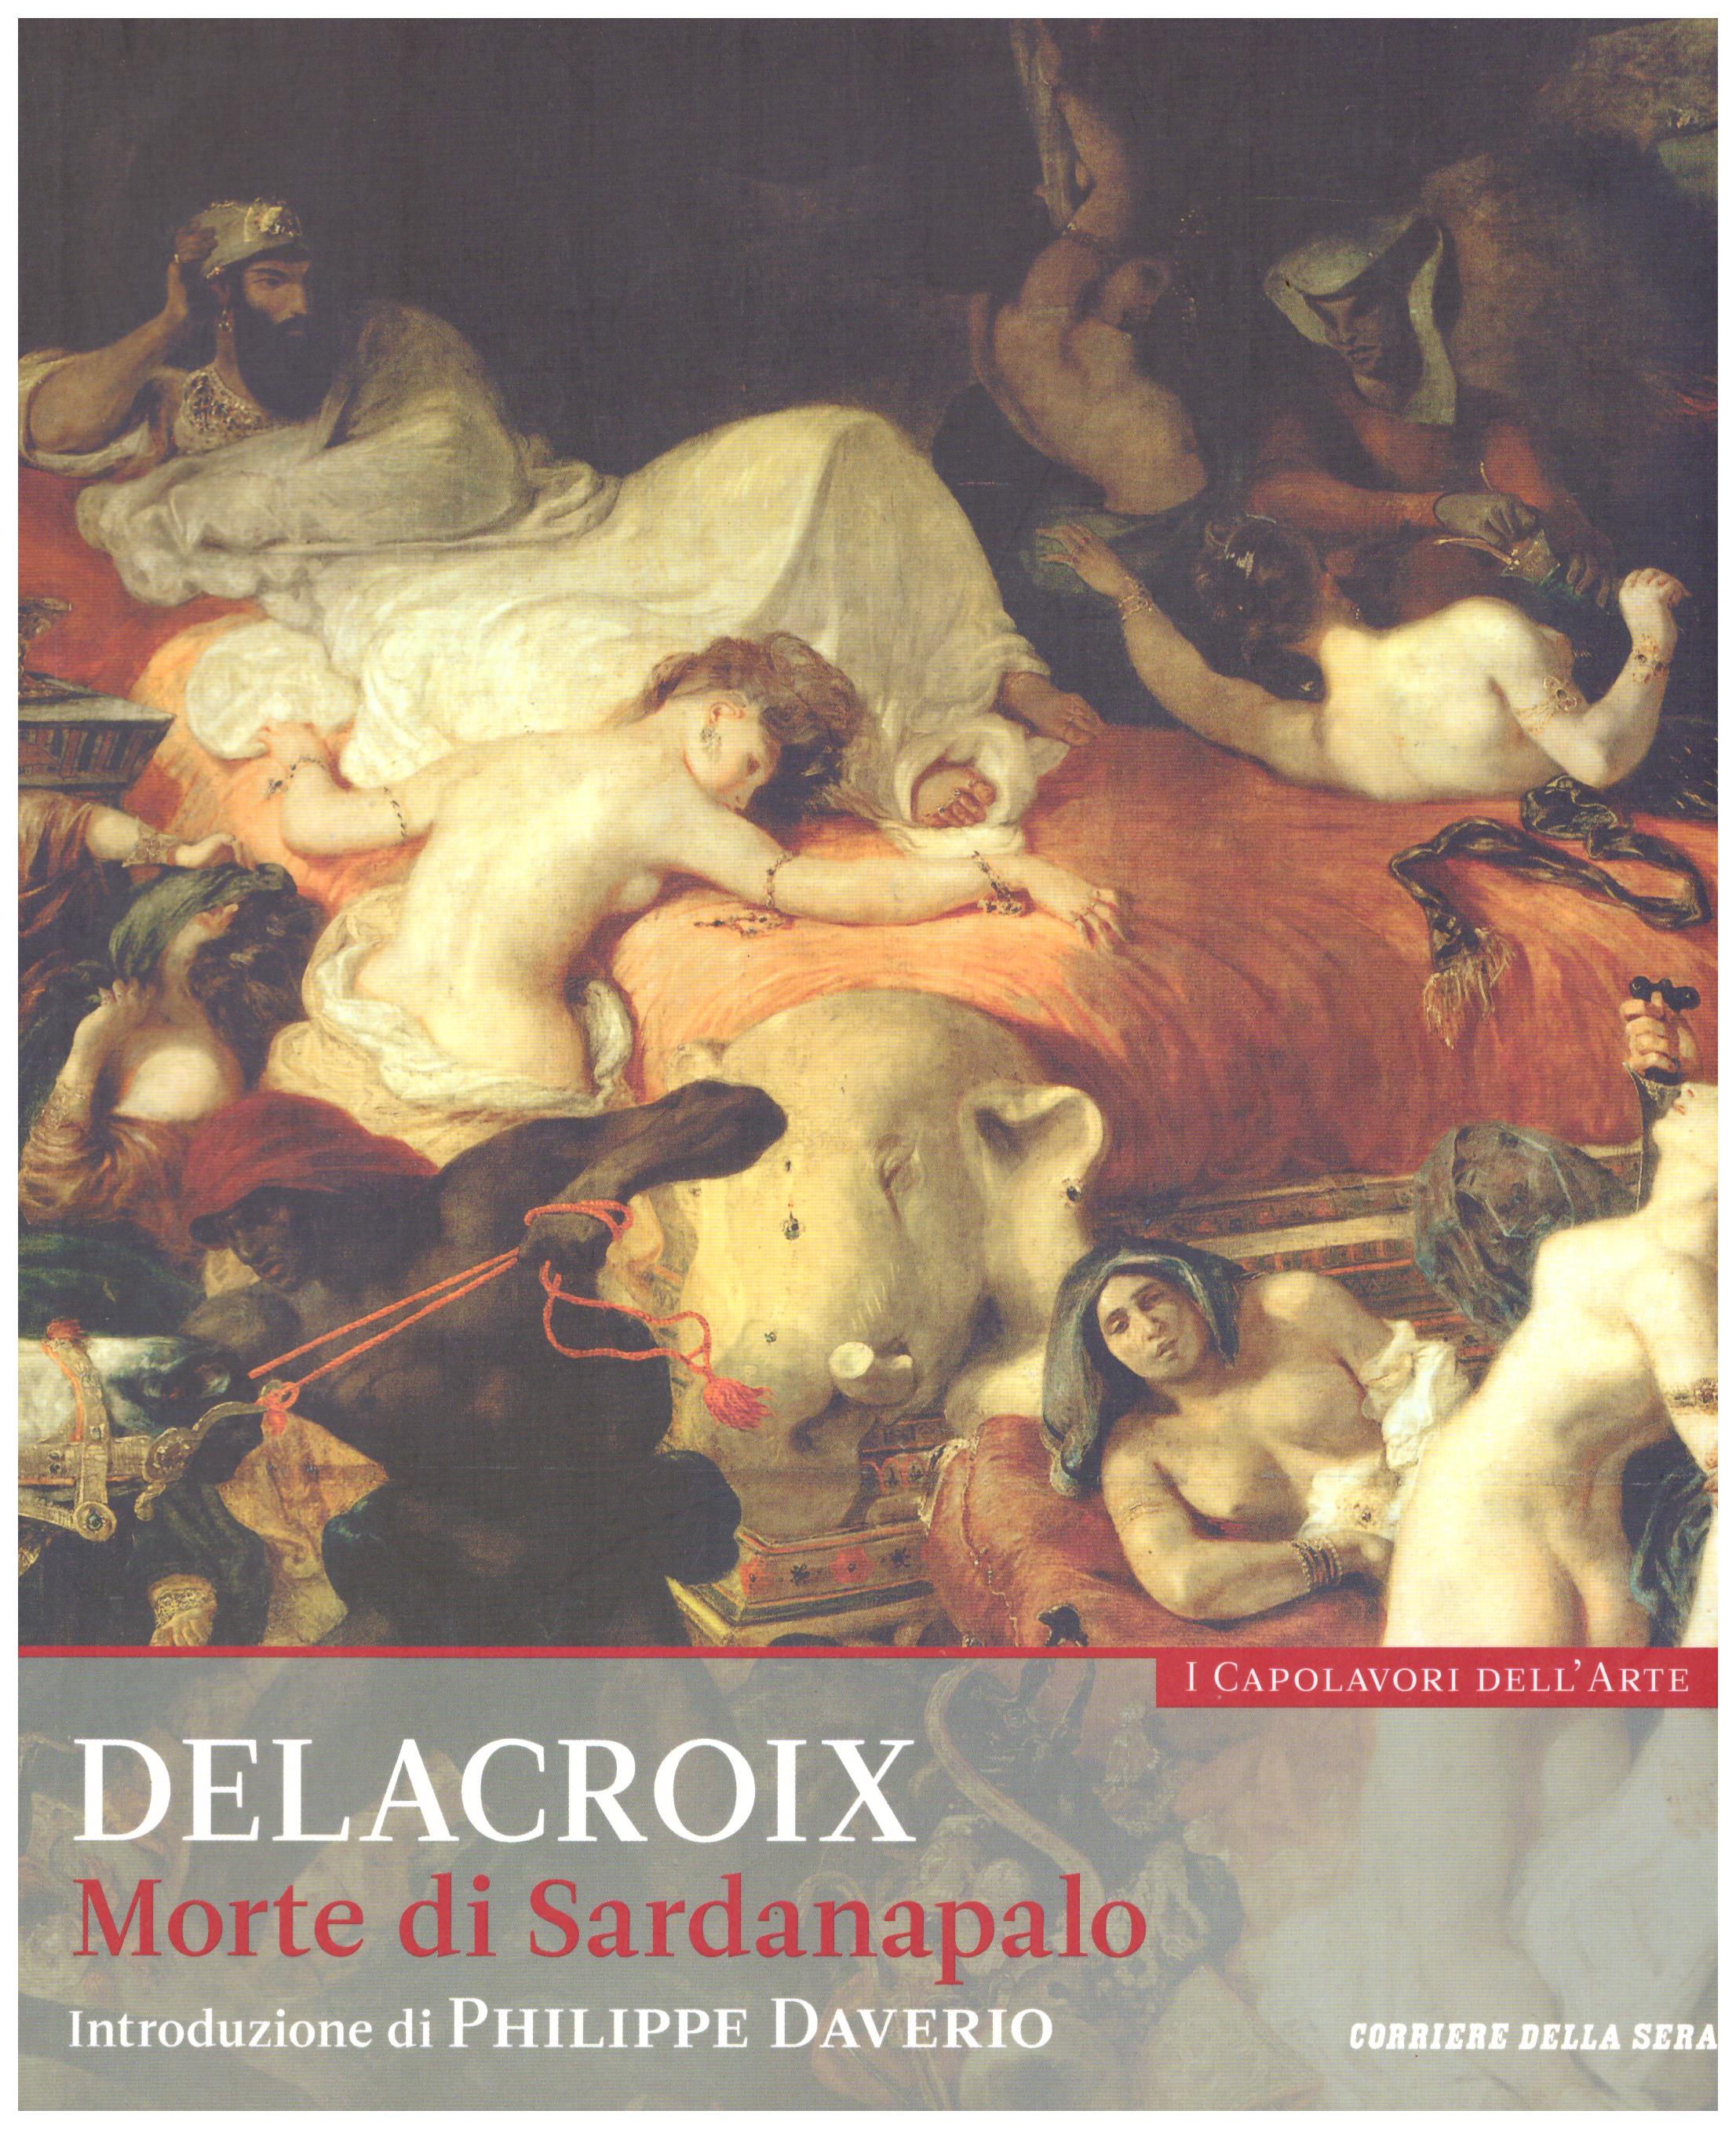 Titolo: I capolavori dell'arte, Delacroix  n.20  Autore : AA.VV.   Editore: education,it/corriere della sera, 2015